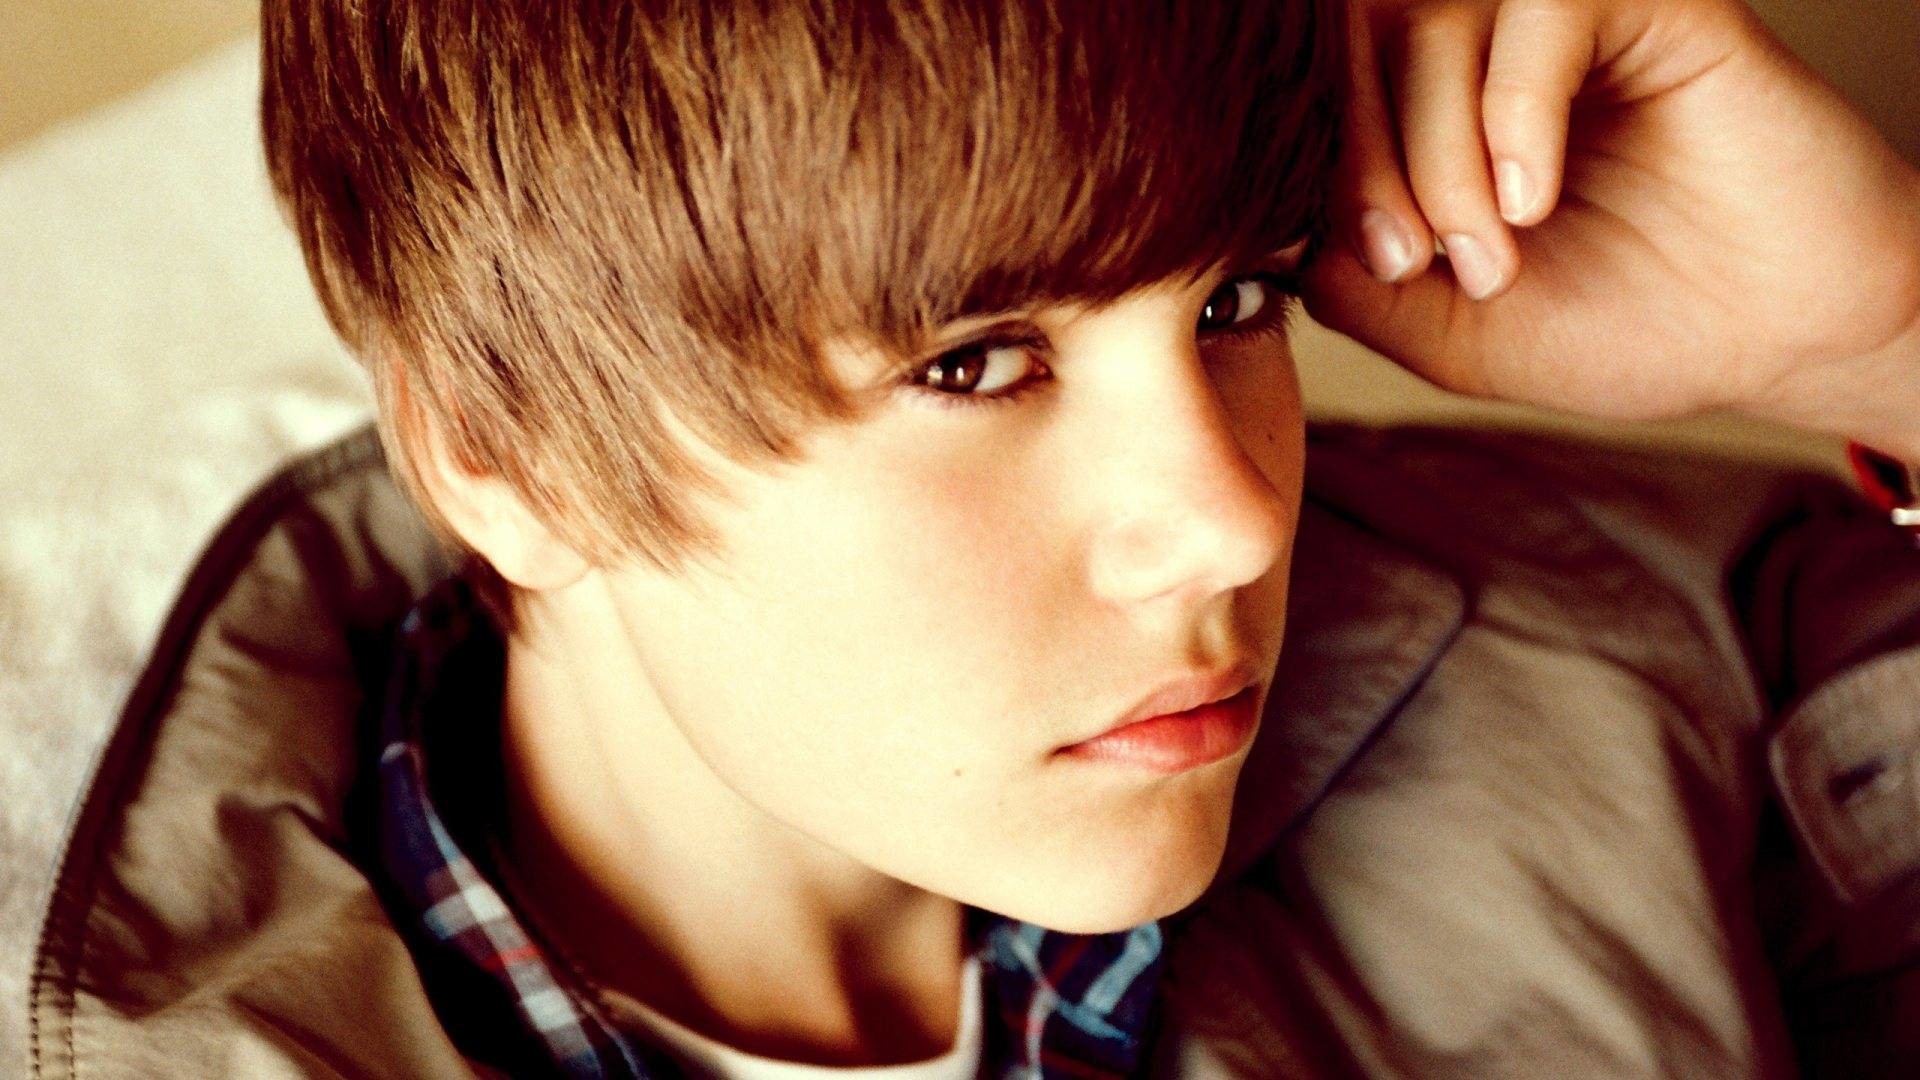 Justin Bieber Wallpaper for Desktop – WallpaperSafari